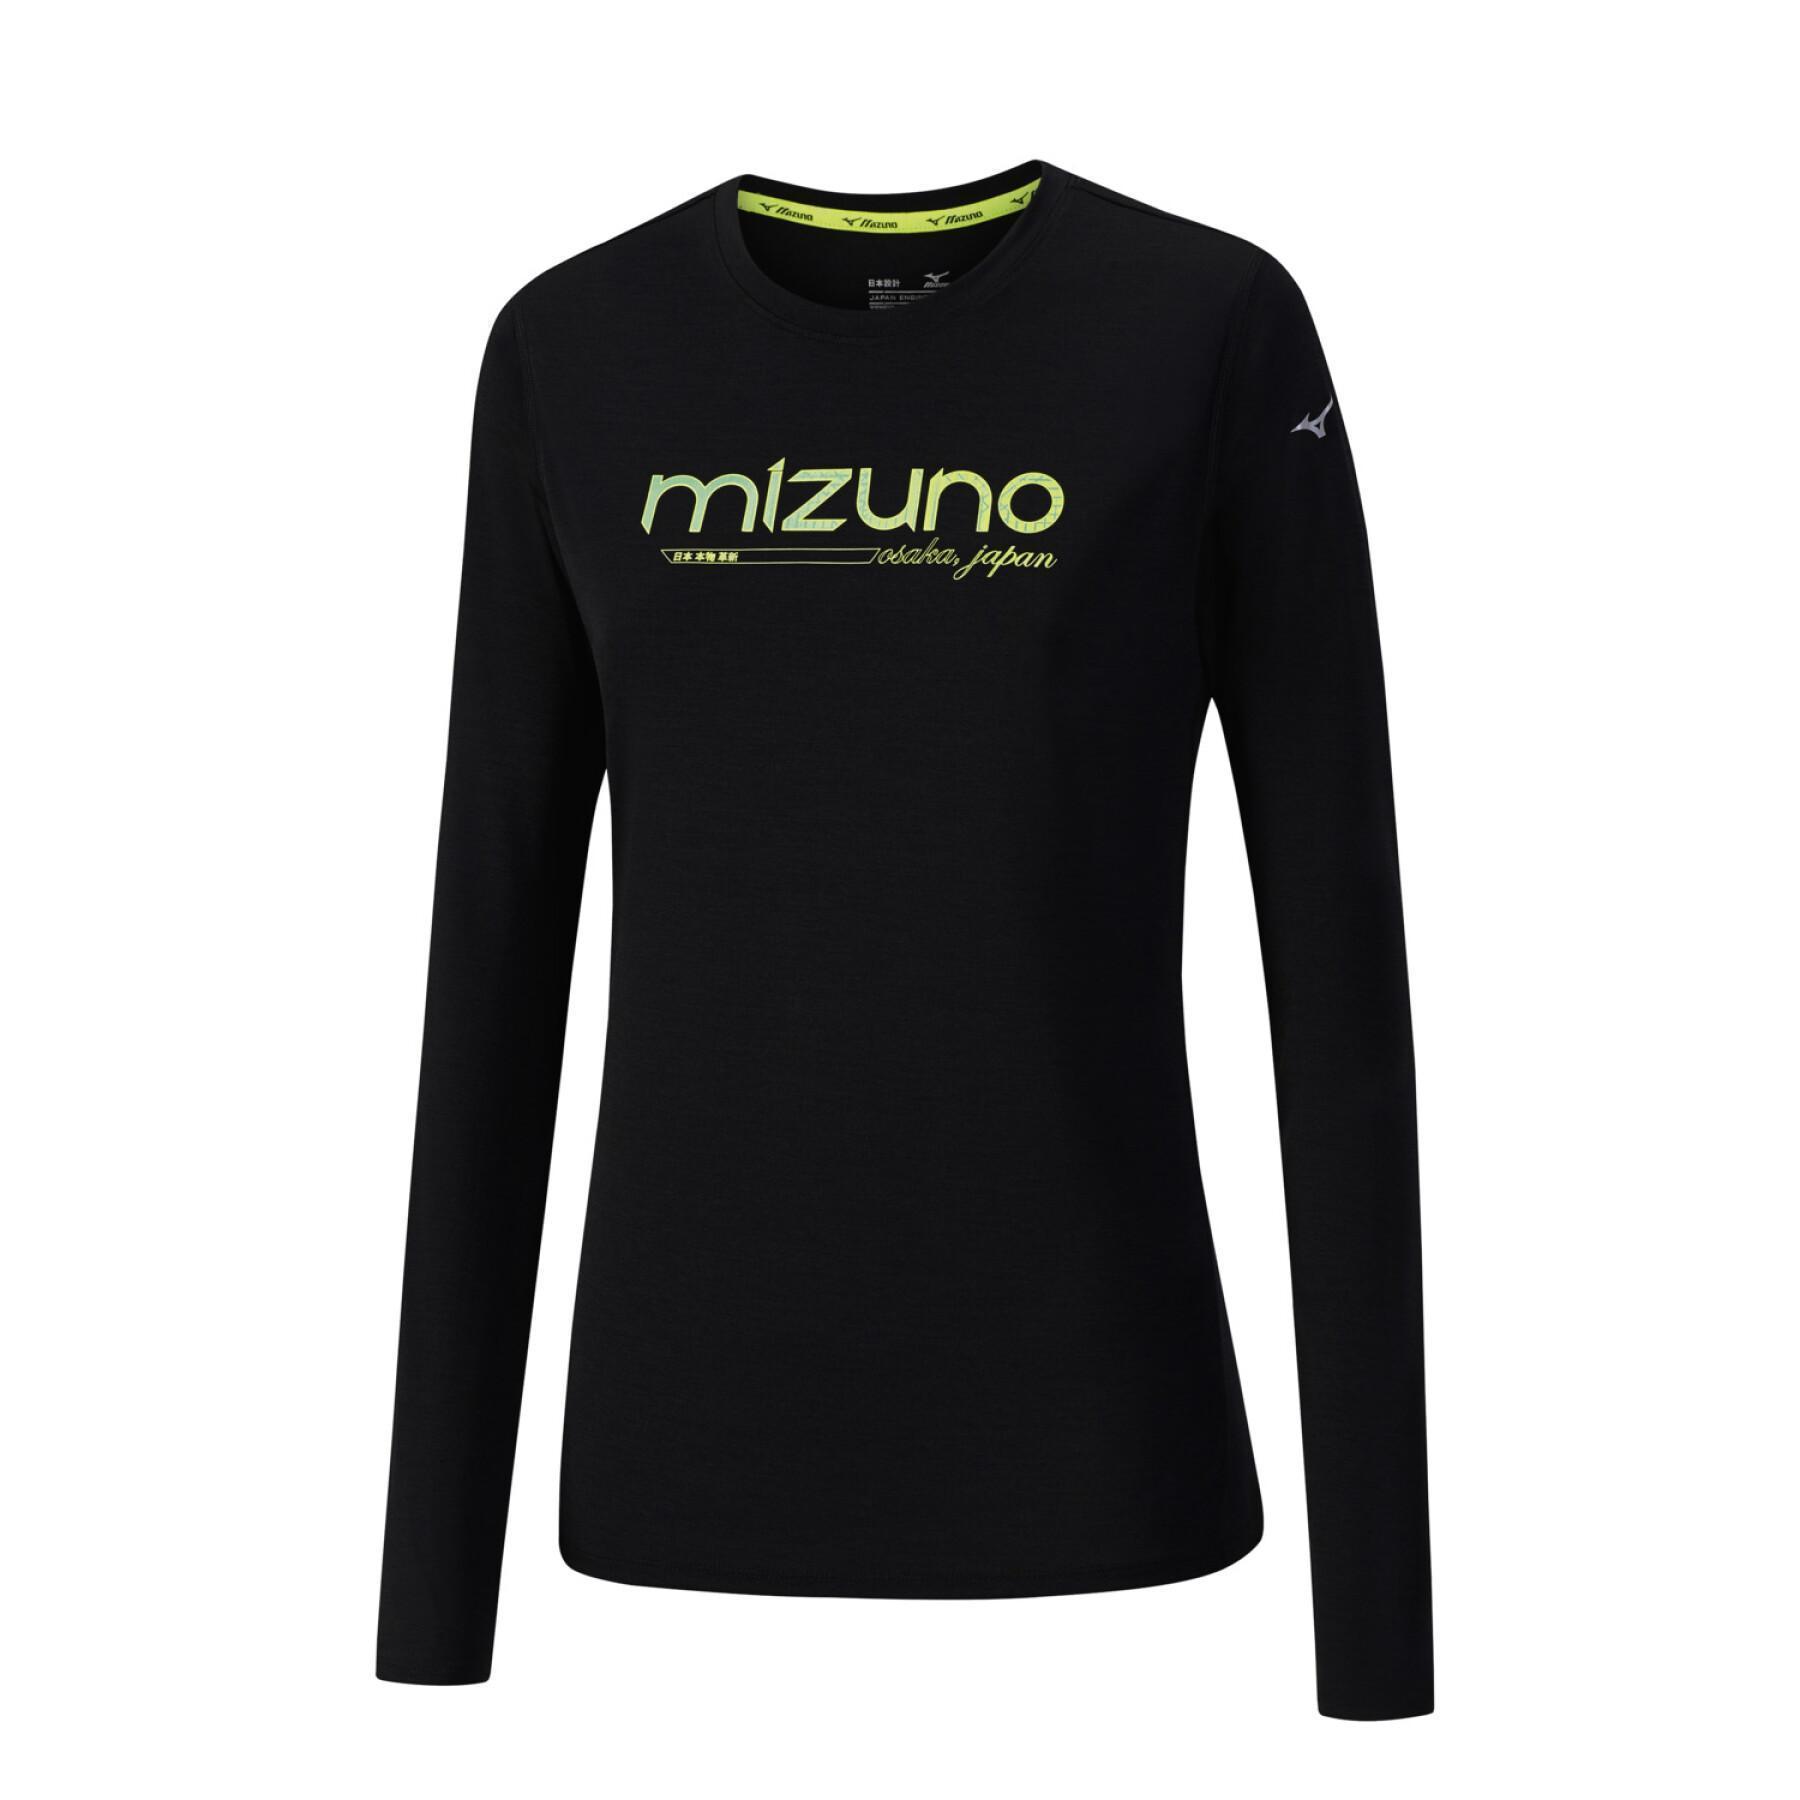 Langarm-T-Shirt für Frauen Mizuno impulse core graphic ls